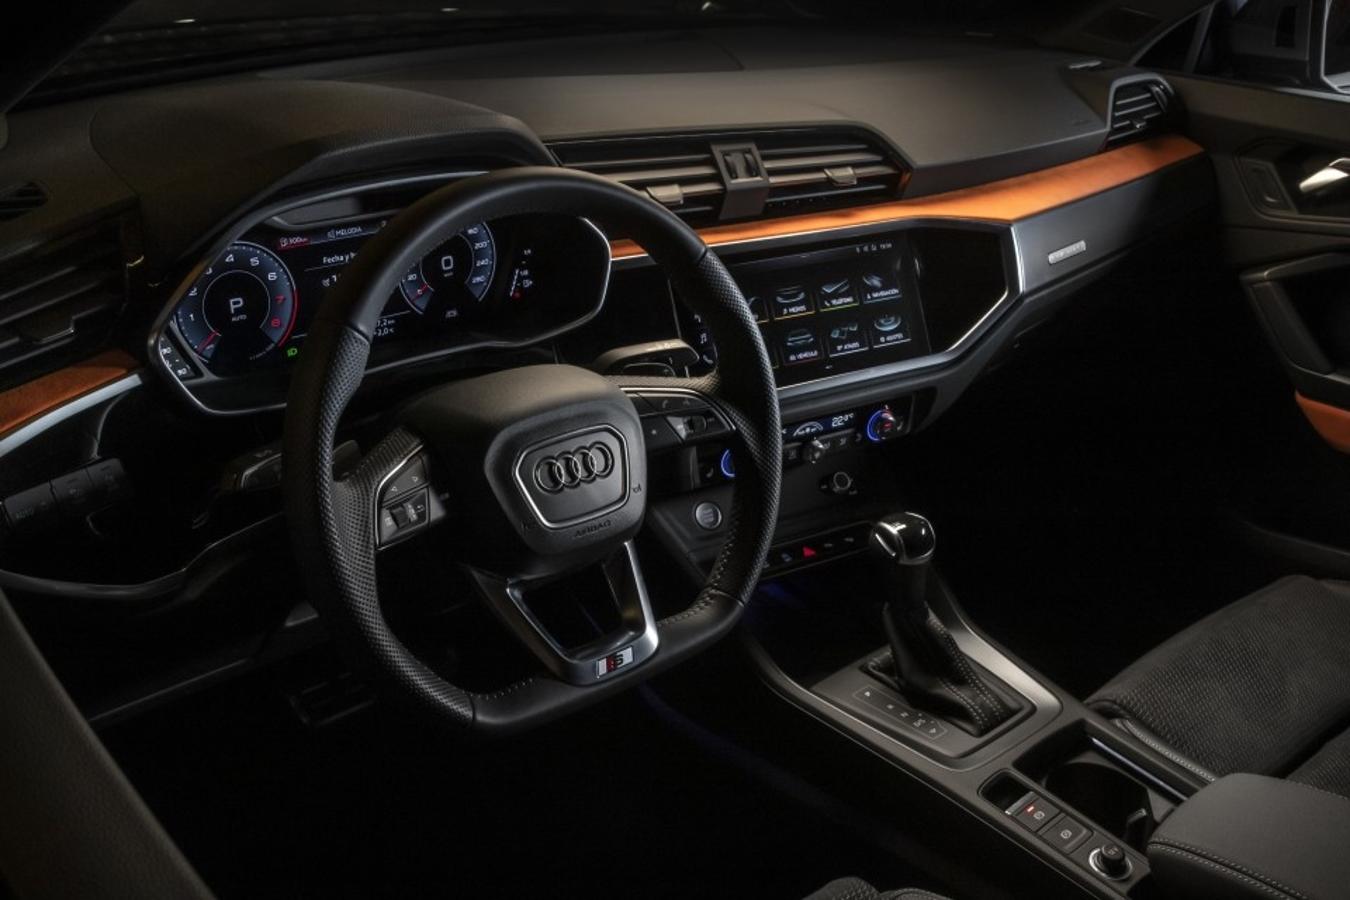 El nuevo Audi Q3 representa un cambio radical frente al modelo anterior. Es de mayor tamaño y se caracteriza por un diseño más deportivo con detalles como la nueva parrilla delantera octogonal. Se comercializa desde 35.880 euros.